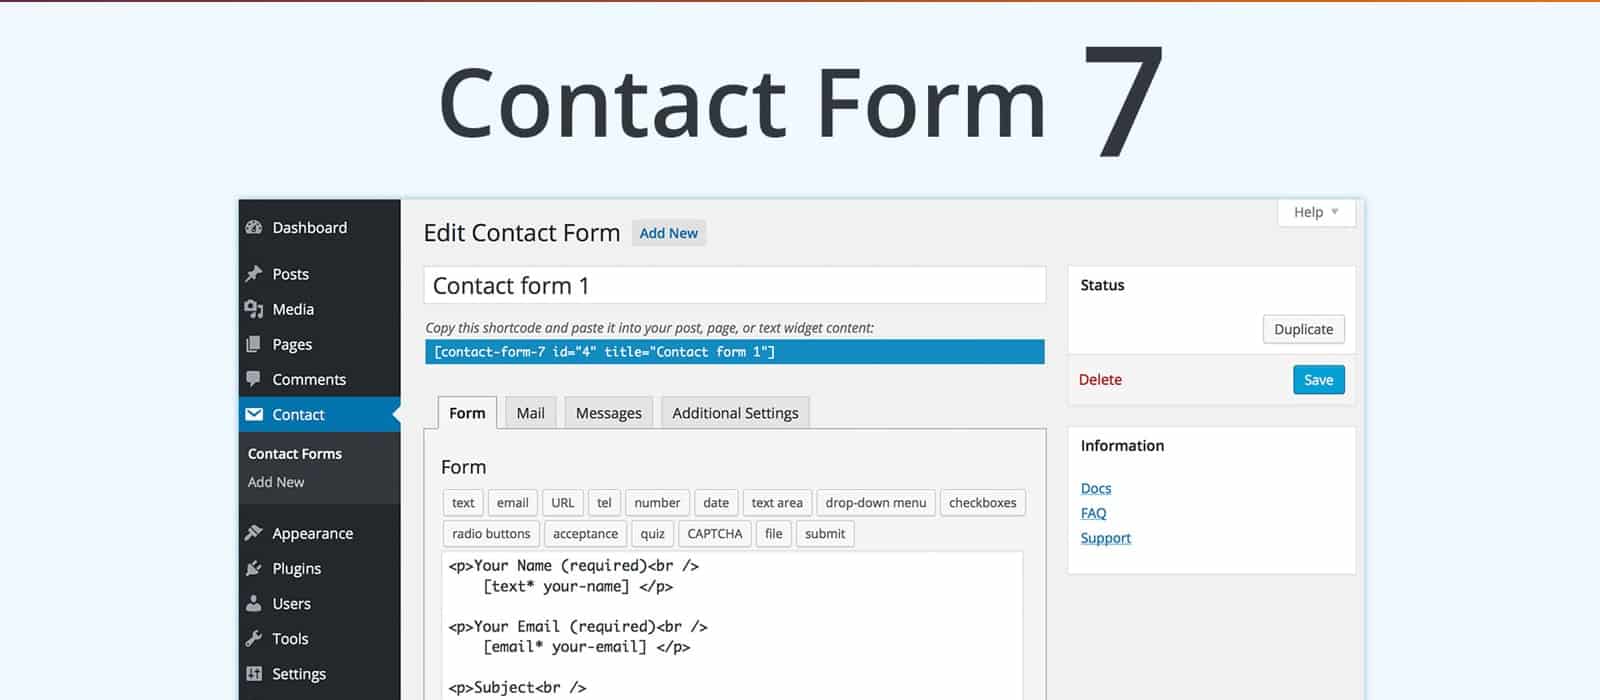 Plugin Contact Form 7